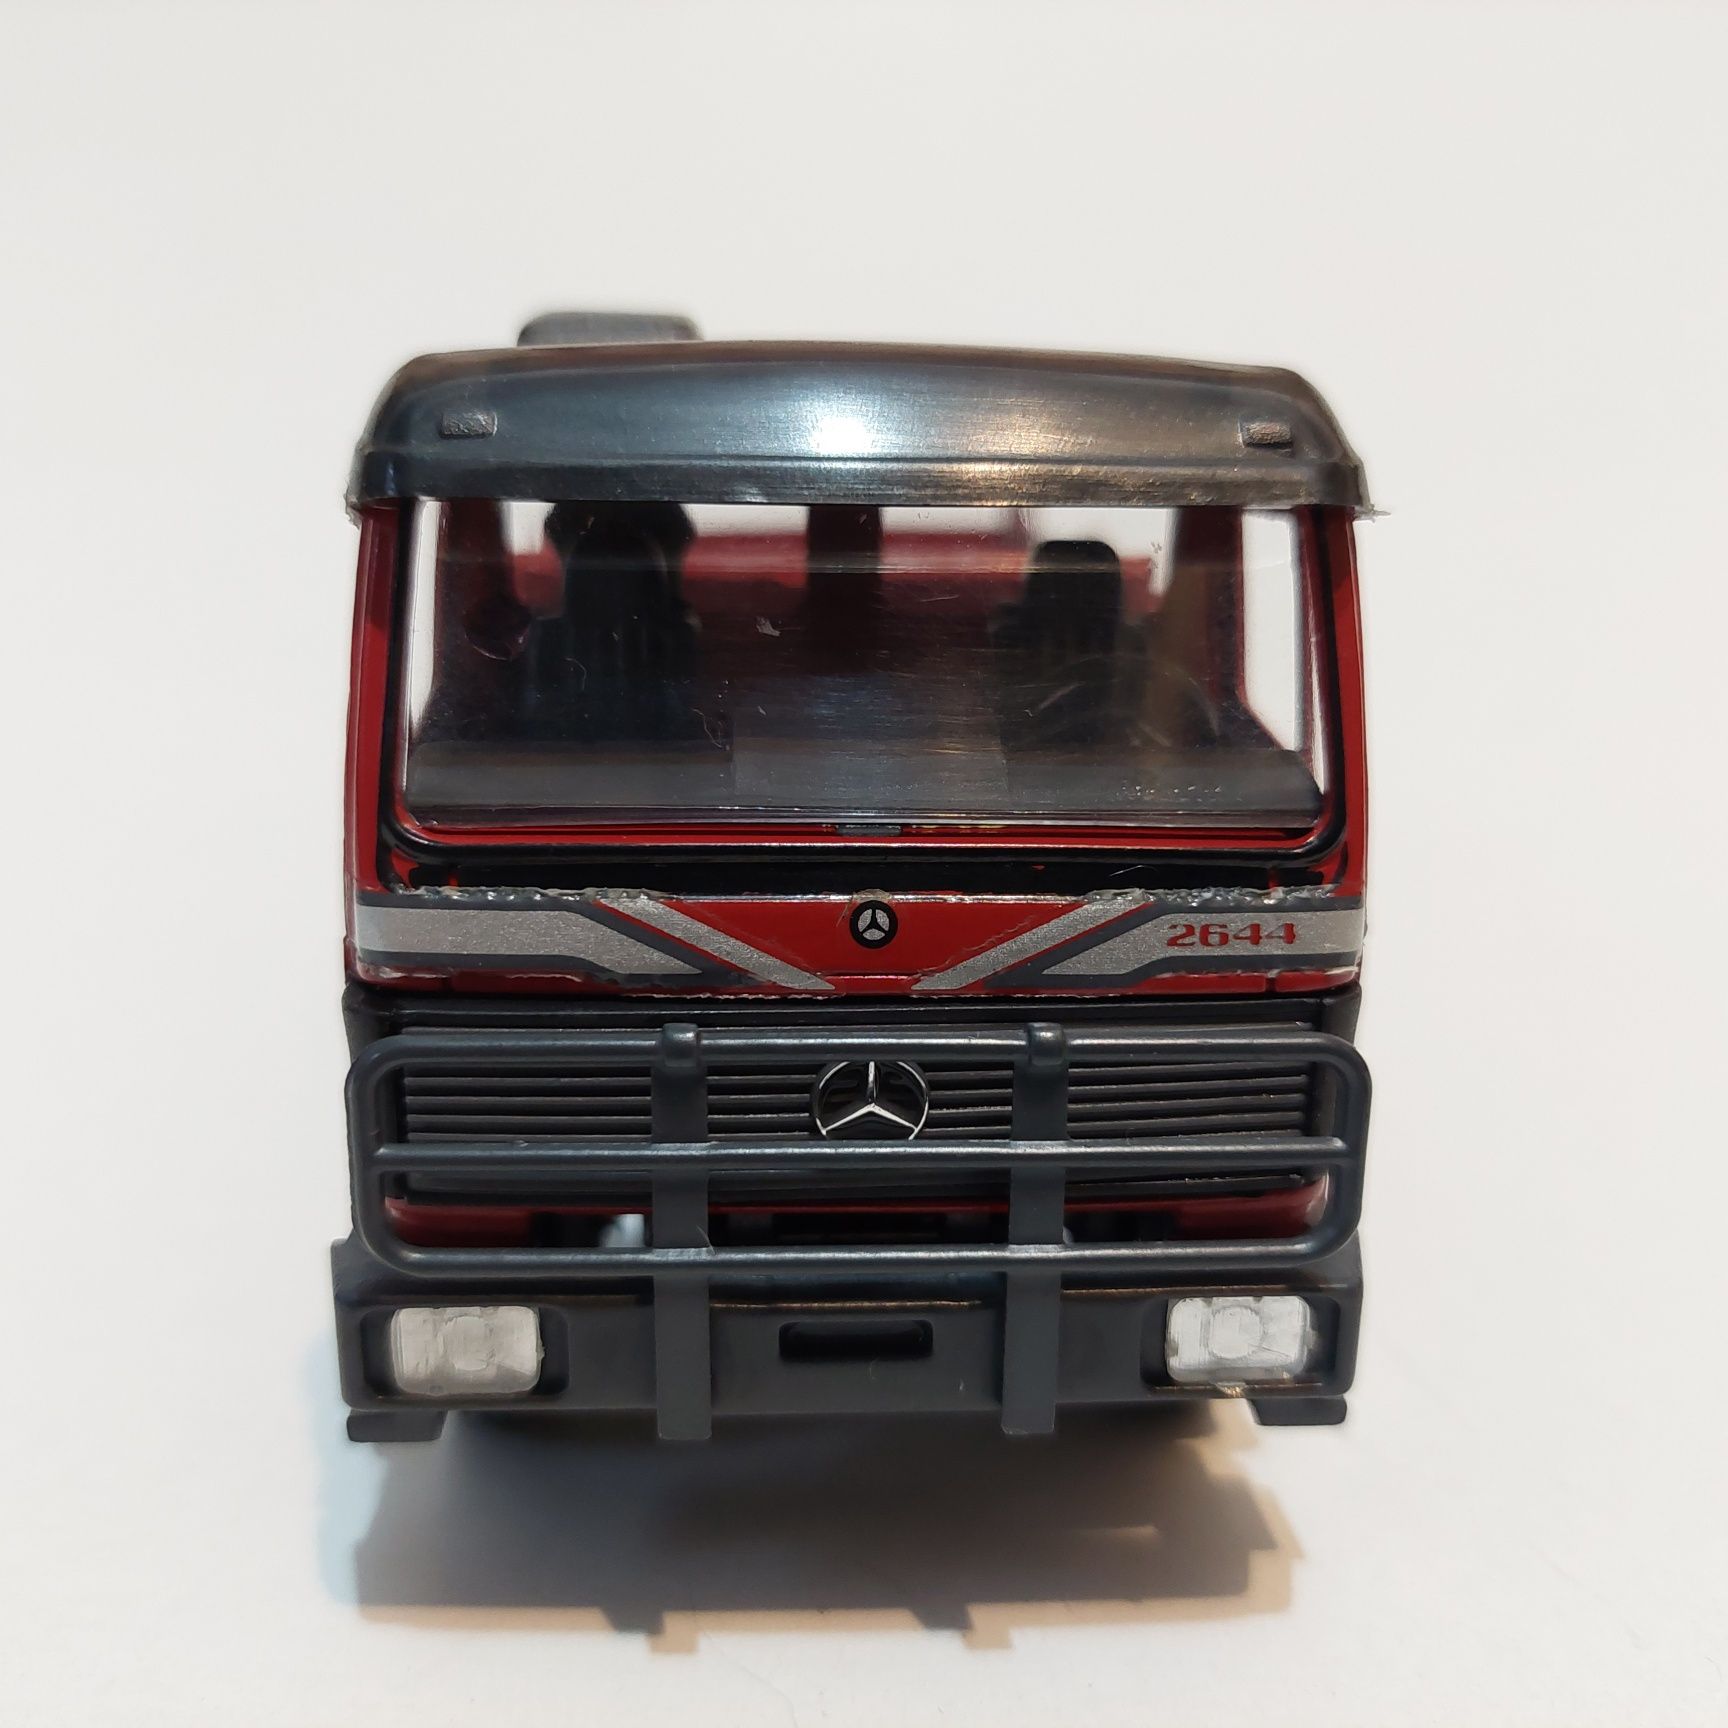 Macheta camion Mercedes-Benz scara 1/43